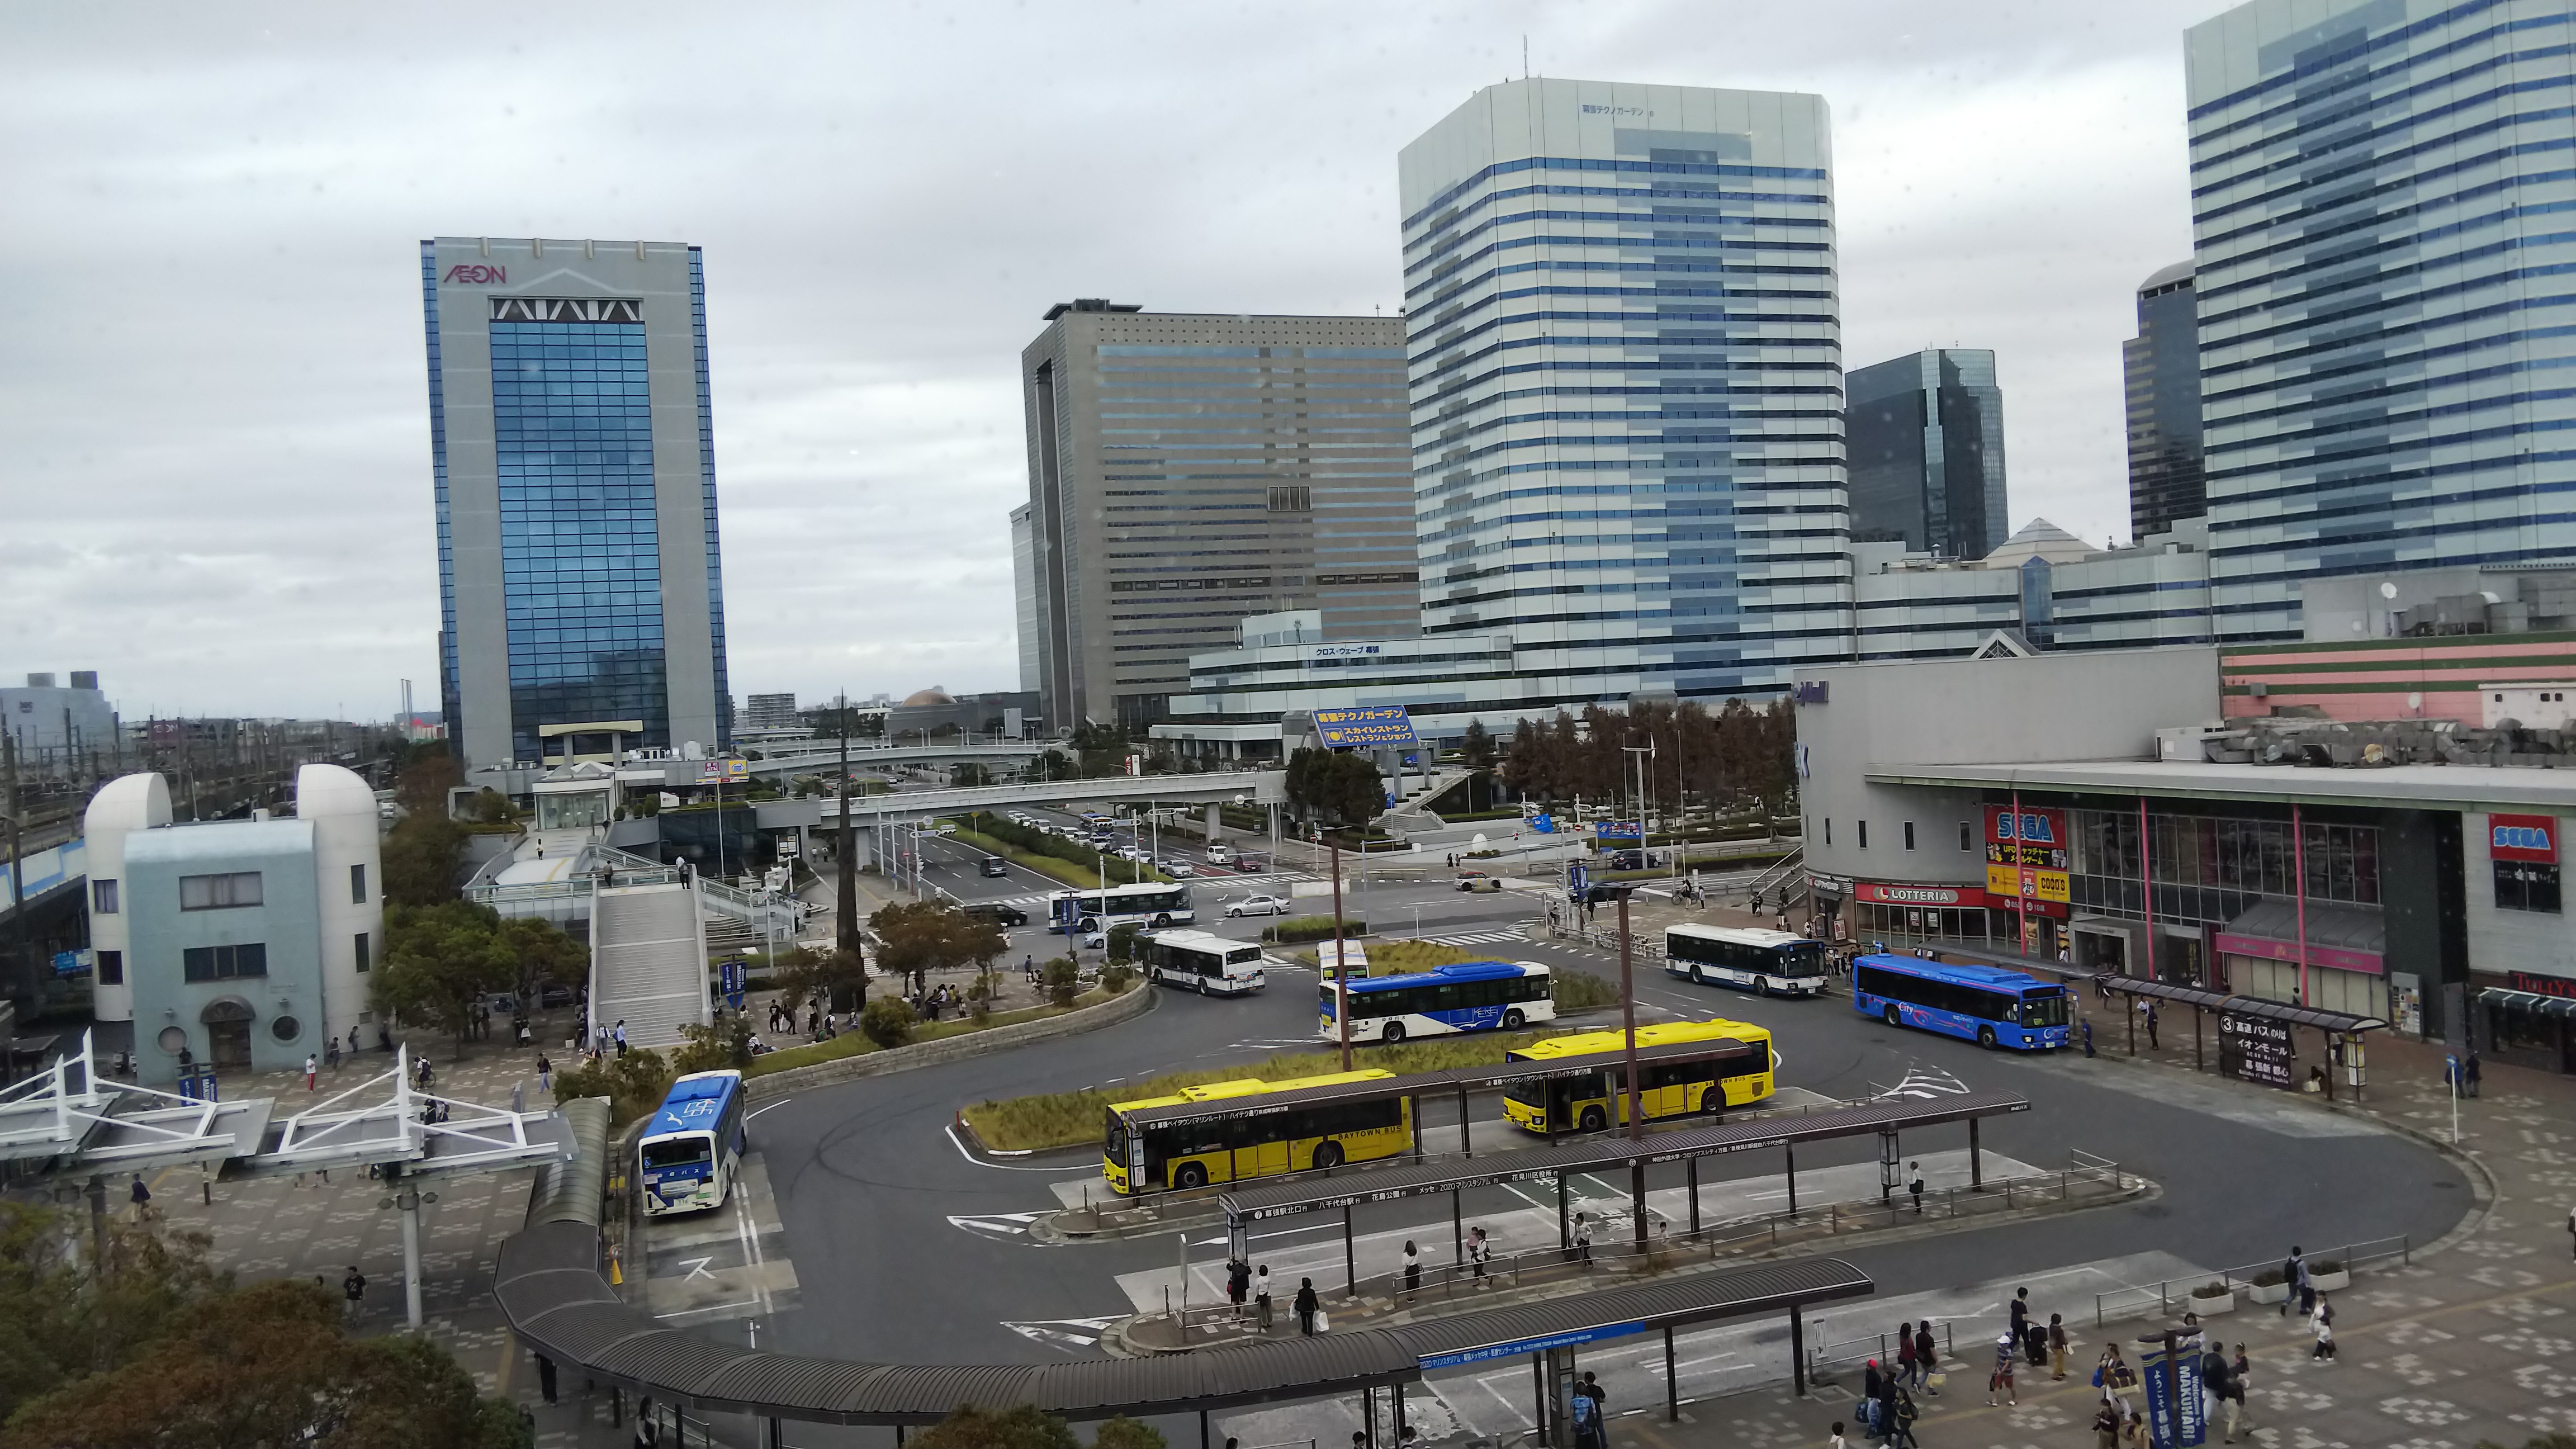 海浜幕張駅を発着するバスの解説